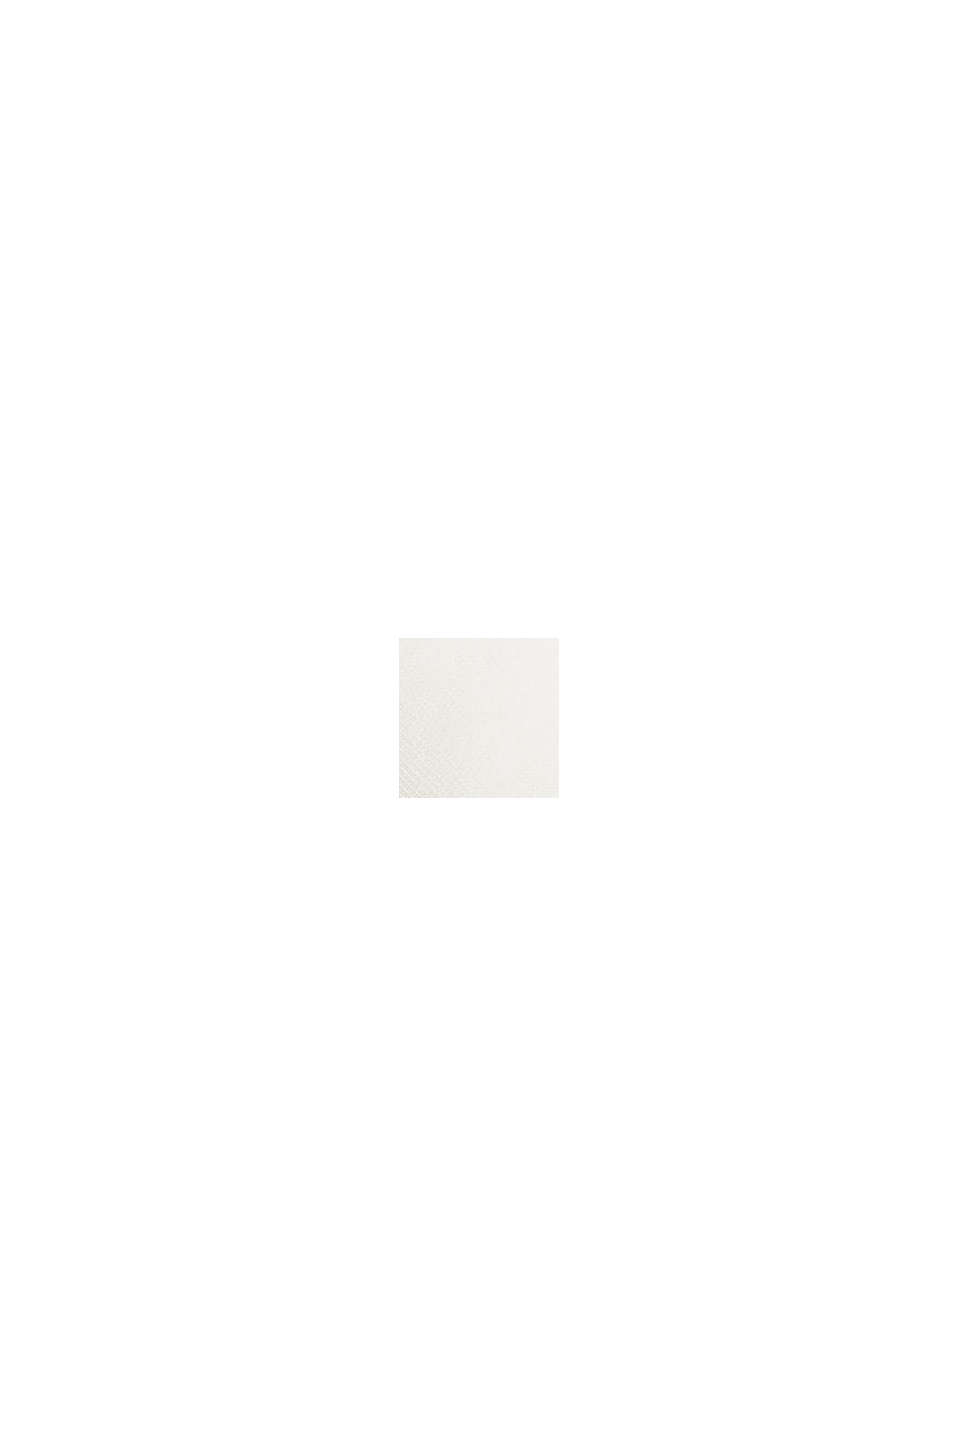 Sudadera con bordado del logotipo, mezcla de algodón, OFF WHITE, swatch